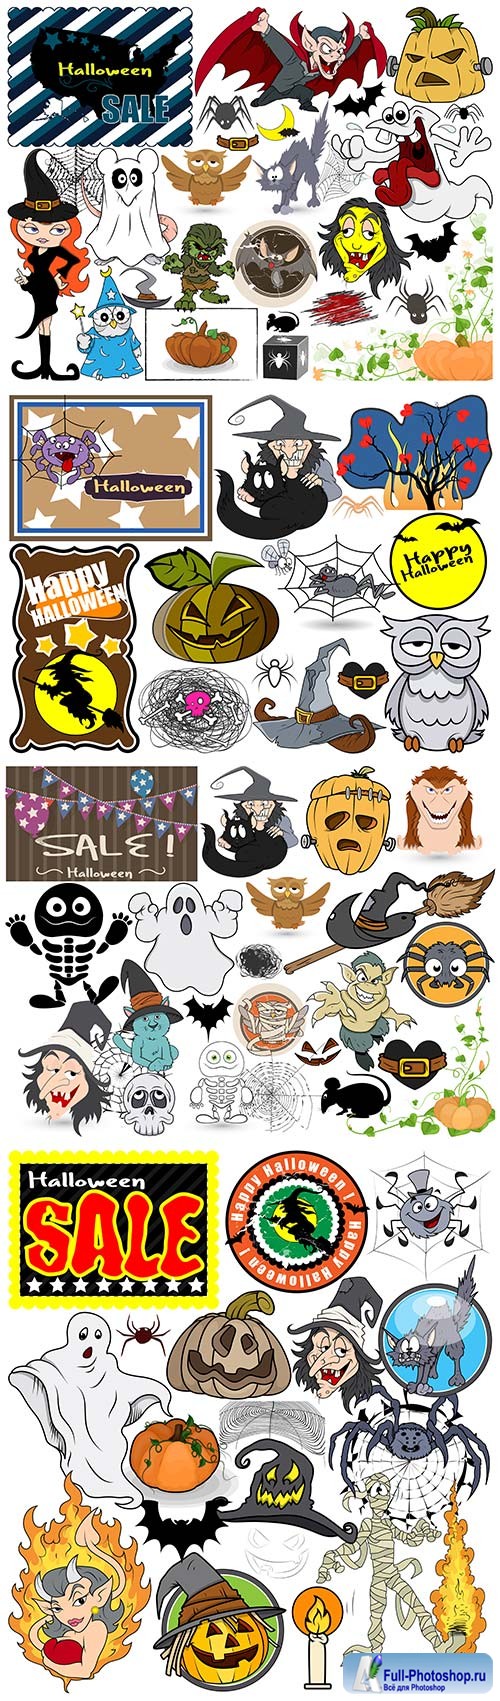 Halloween graphics vector elements